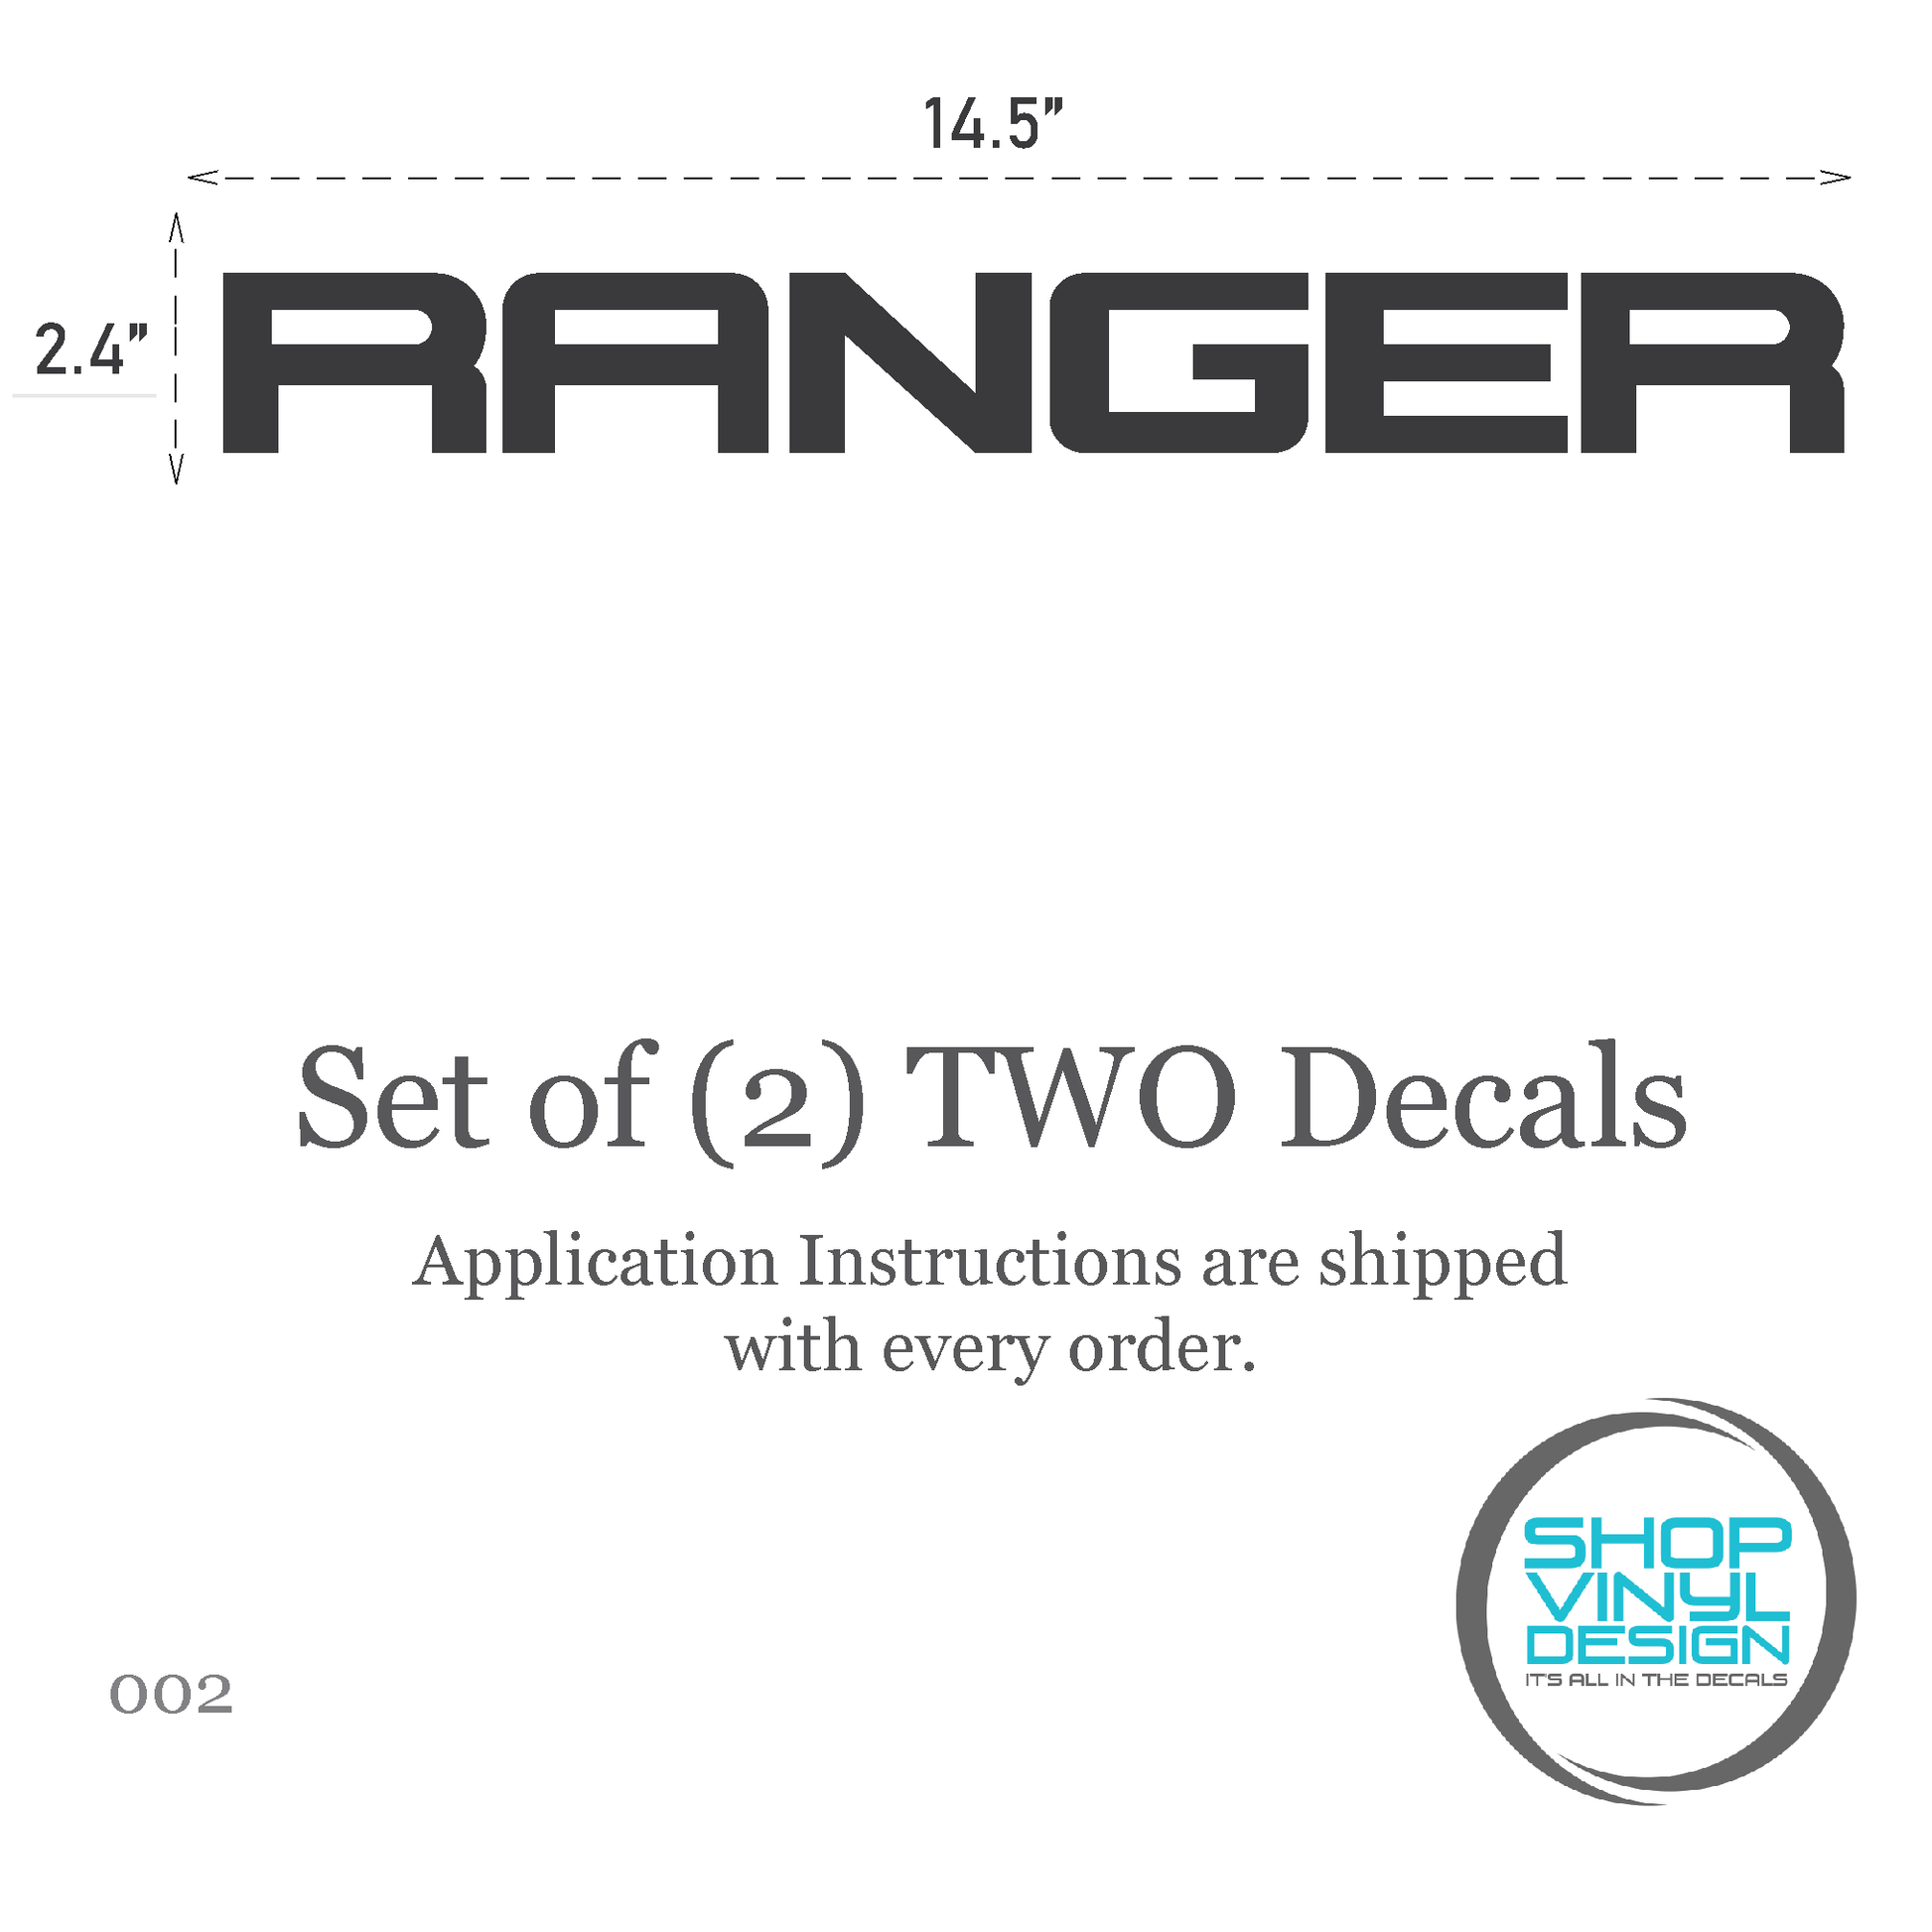 Shop Vinyl Design Ranger Replacement Bedside Decals #002 Vehicle Vinyl Graphic Decal Shop Vinyl Design decals stickers